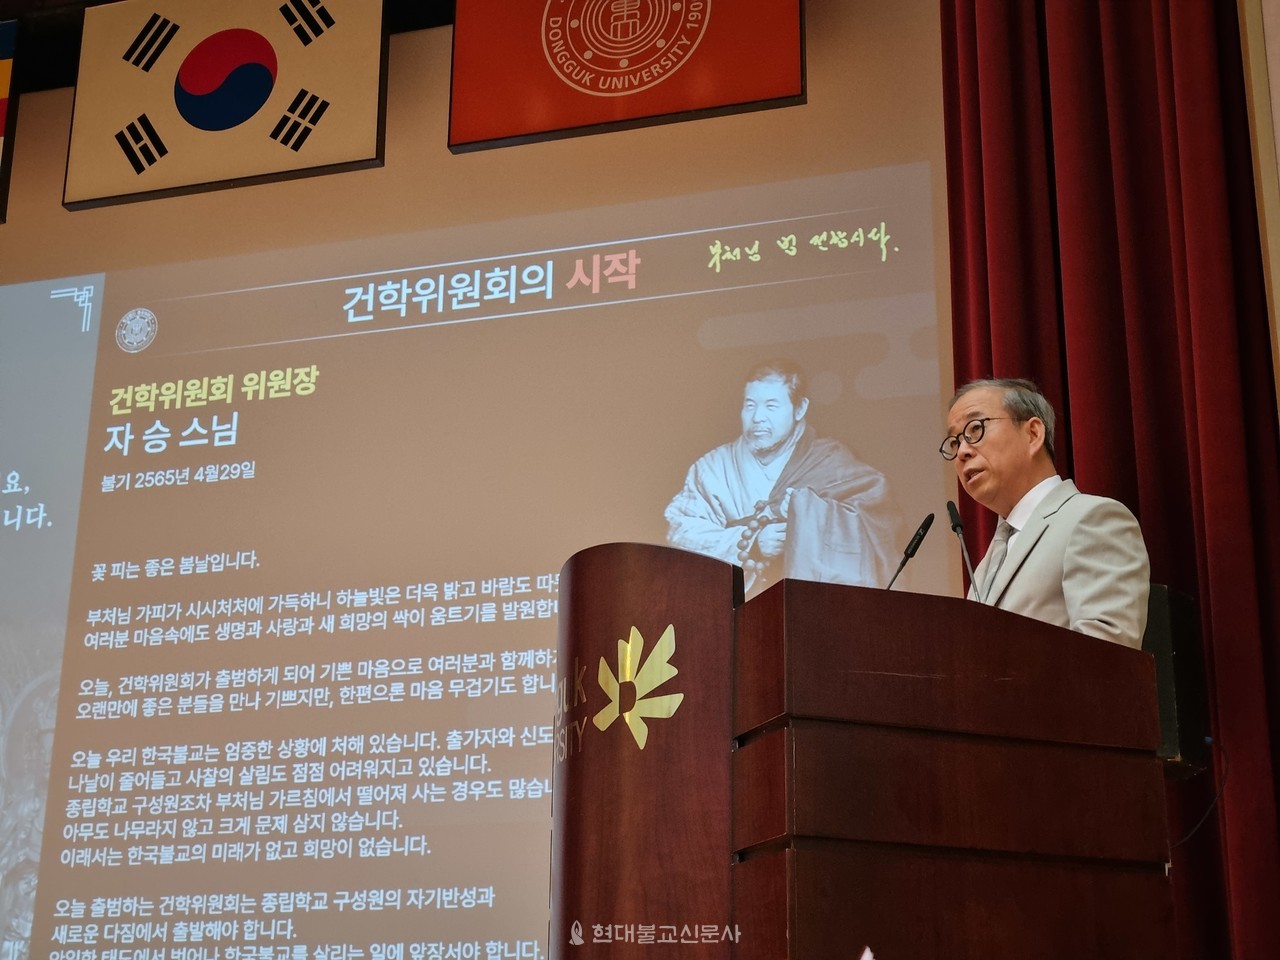 윤재웅 총장이 2주년 주요성과와 향후 계획에 대해 발표하고 있다.